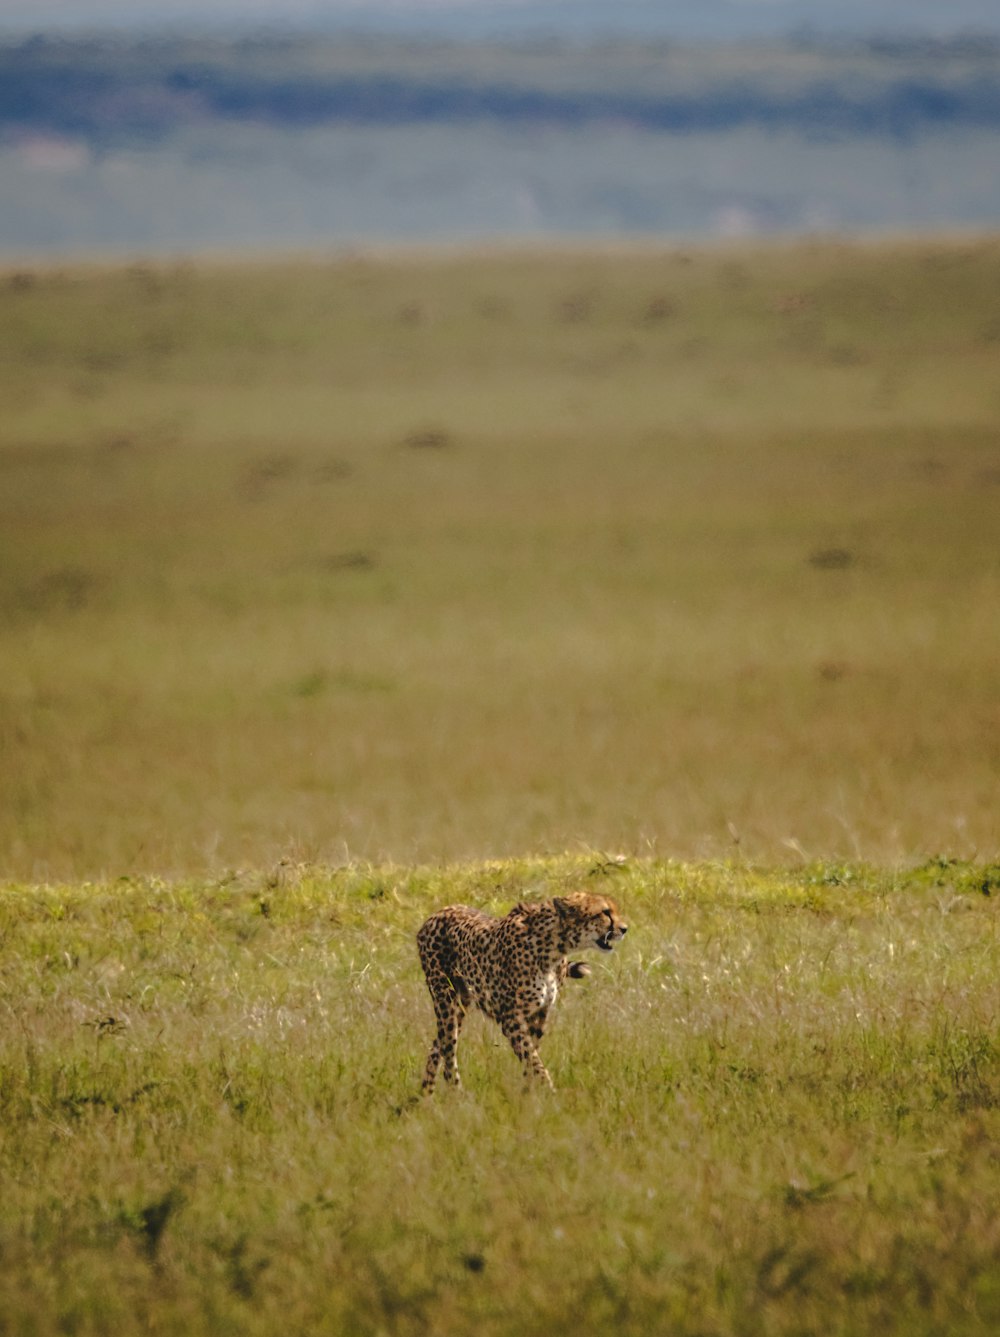 a cheetah walking through a grassy plain